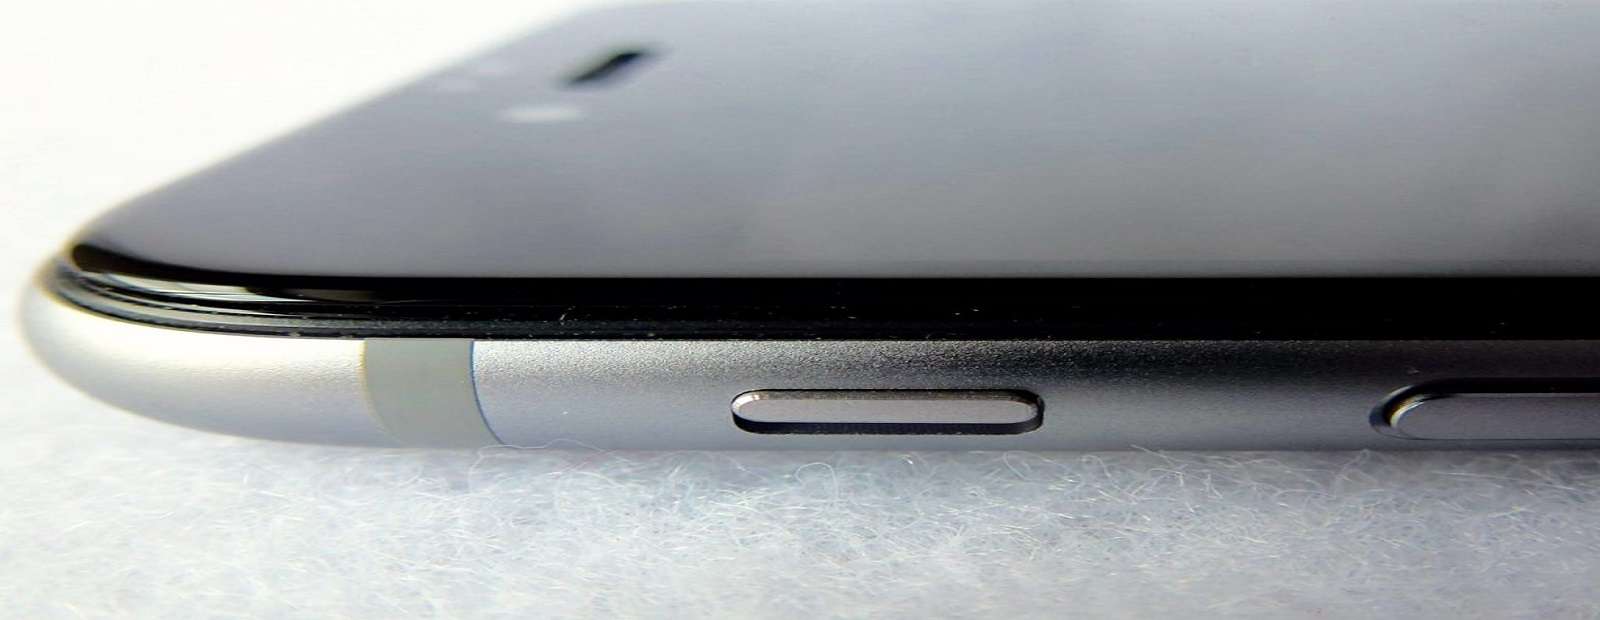 Яке захисне скло вибрати на iPhone 9D або 3D